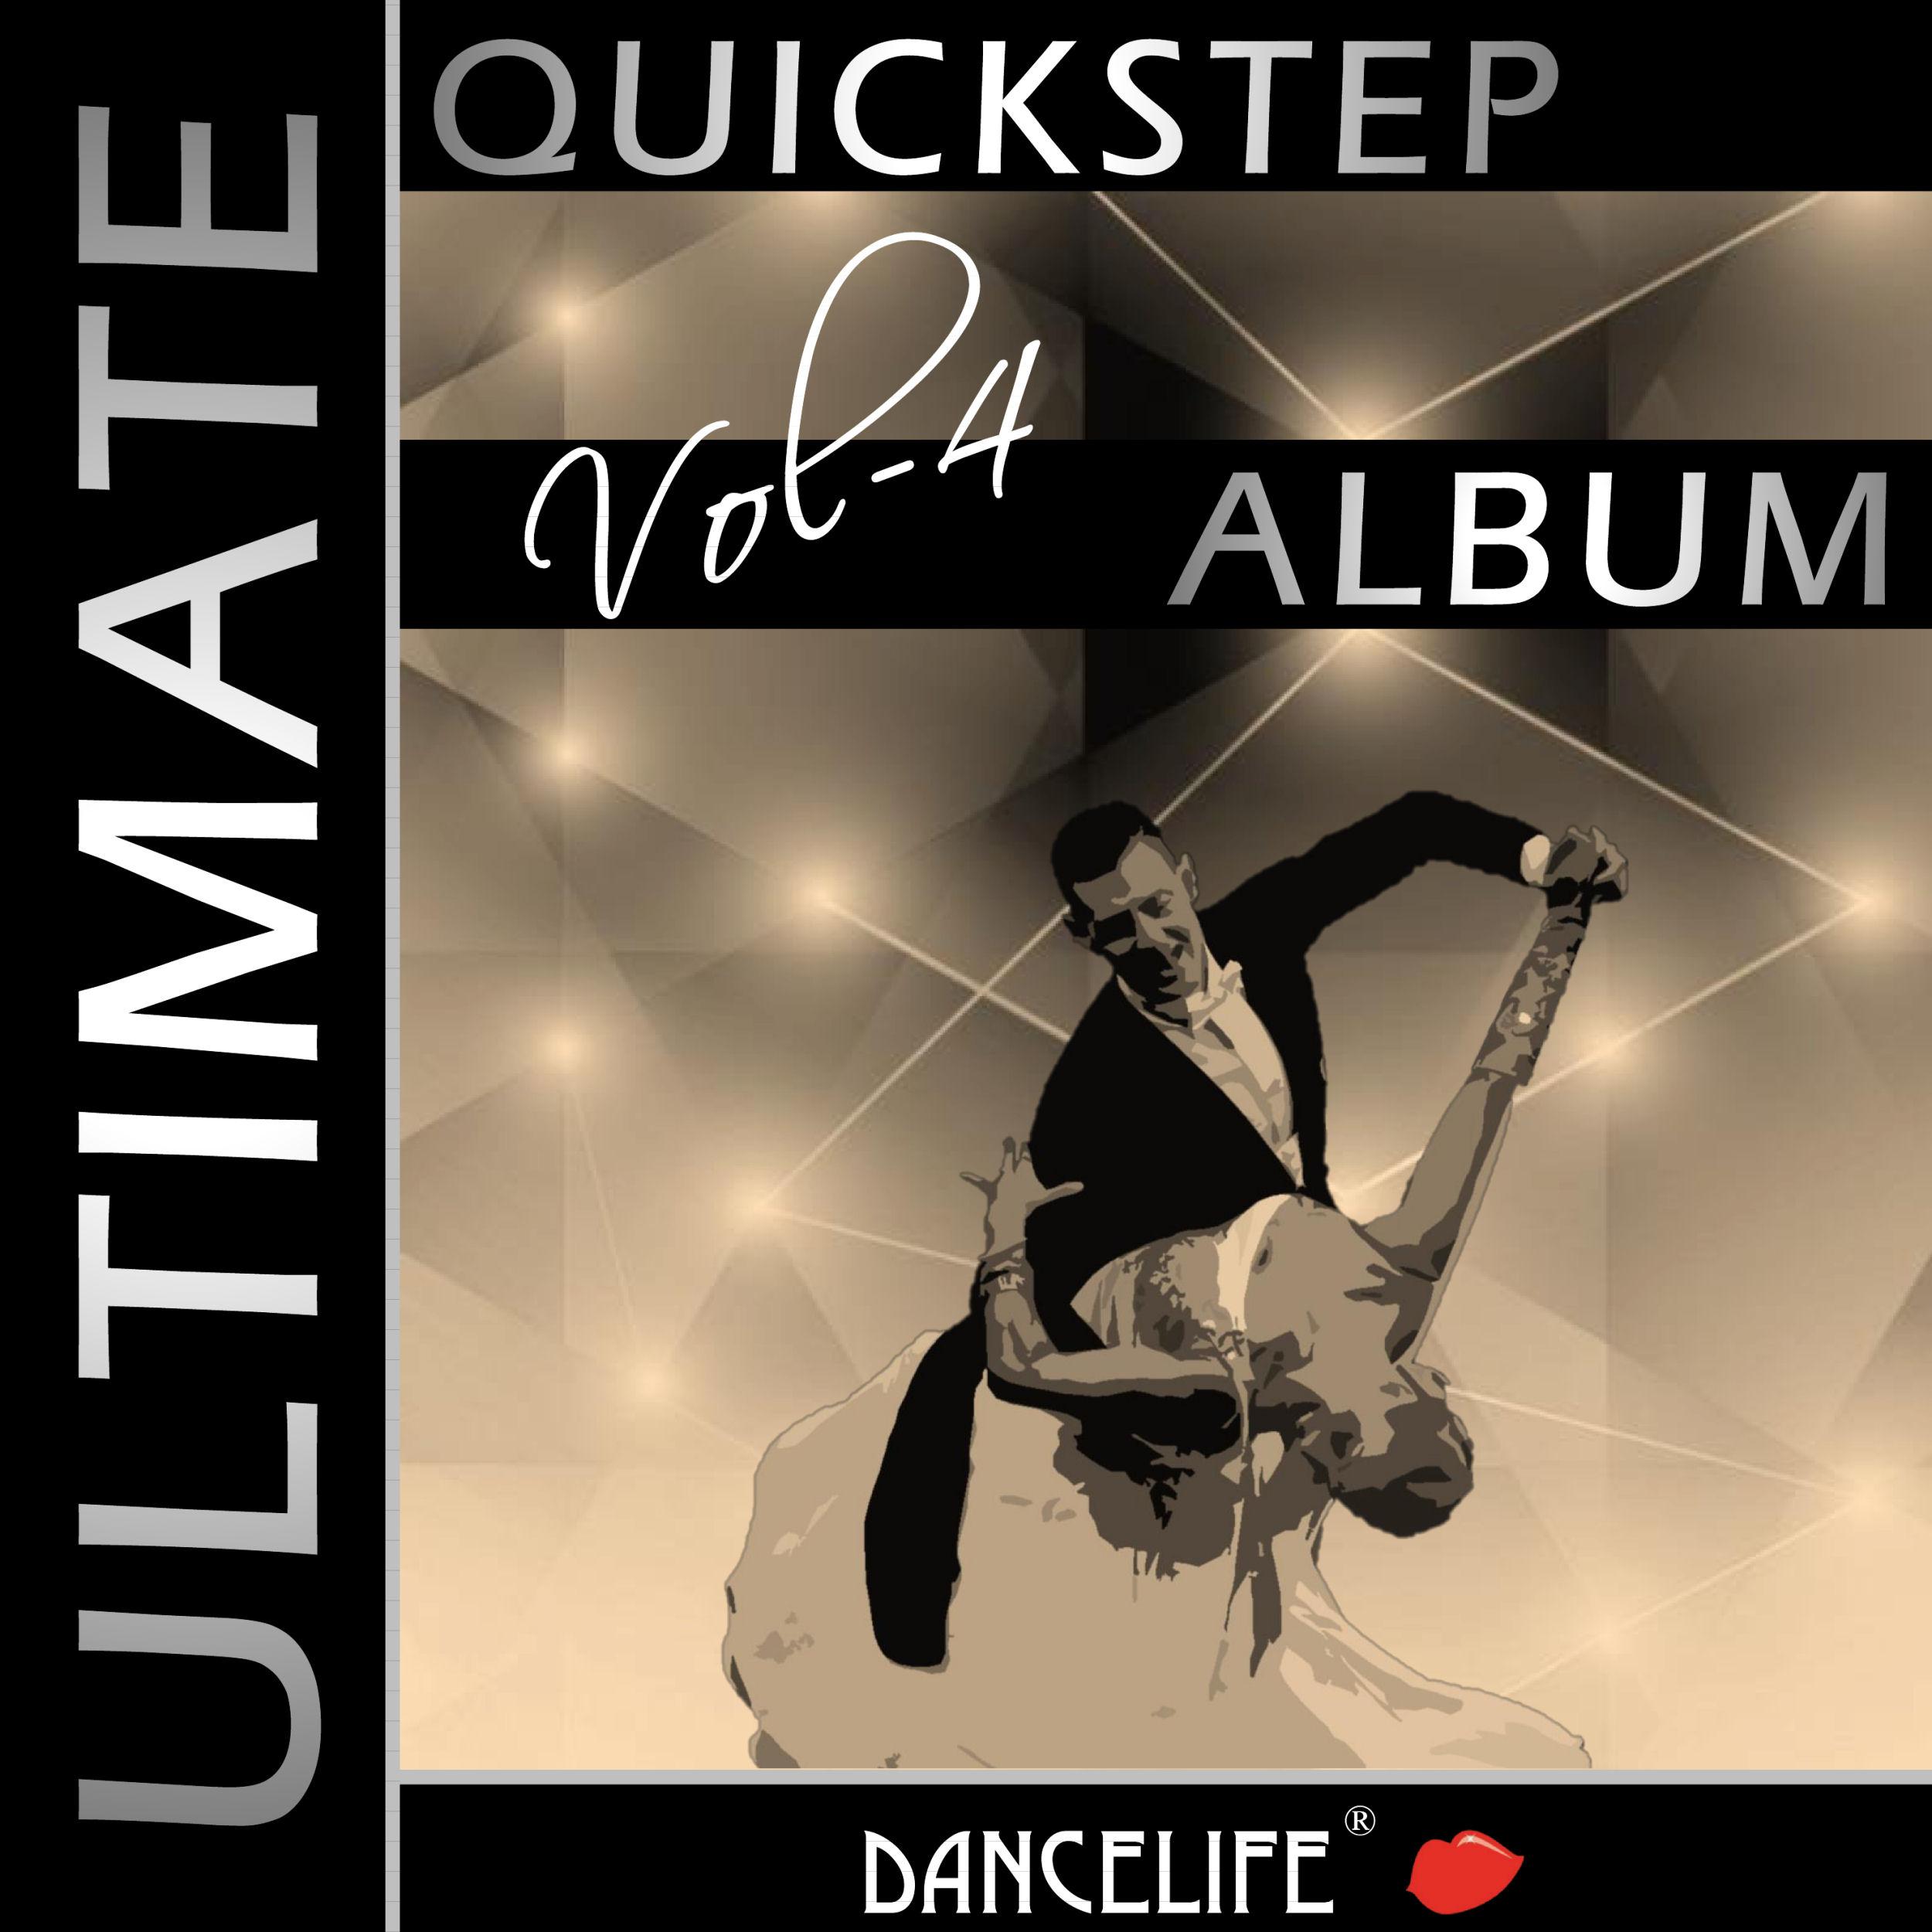 Dancelife presents: The Ultimate Quickstep Album, Vol. 4